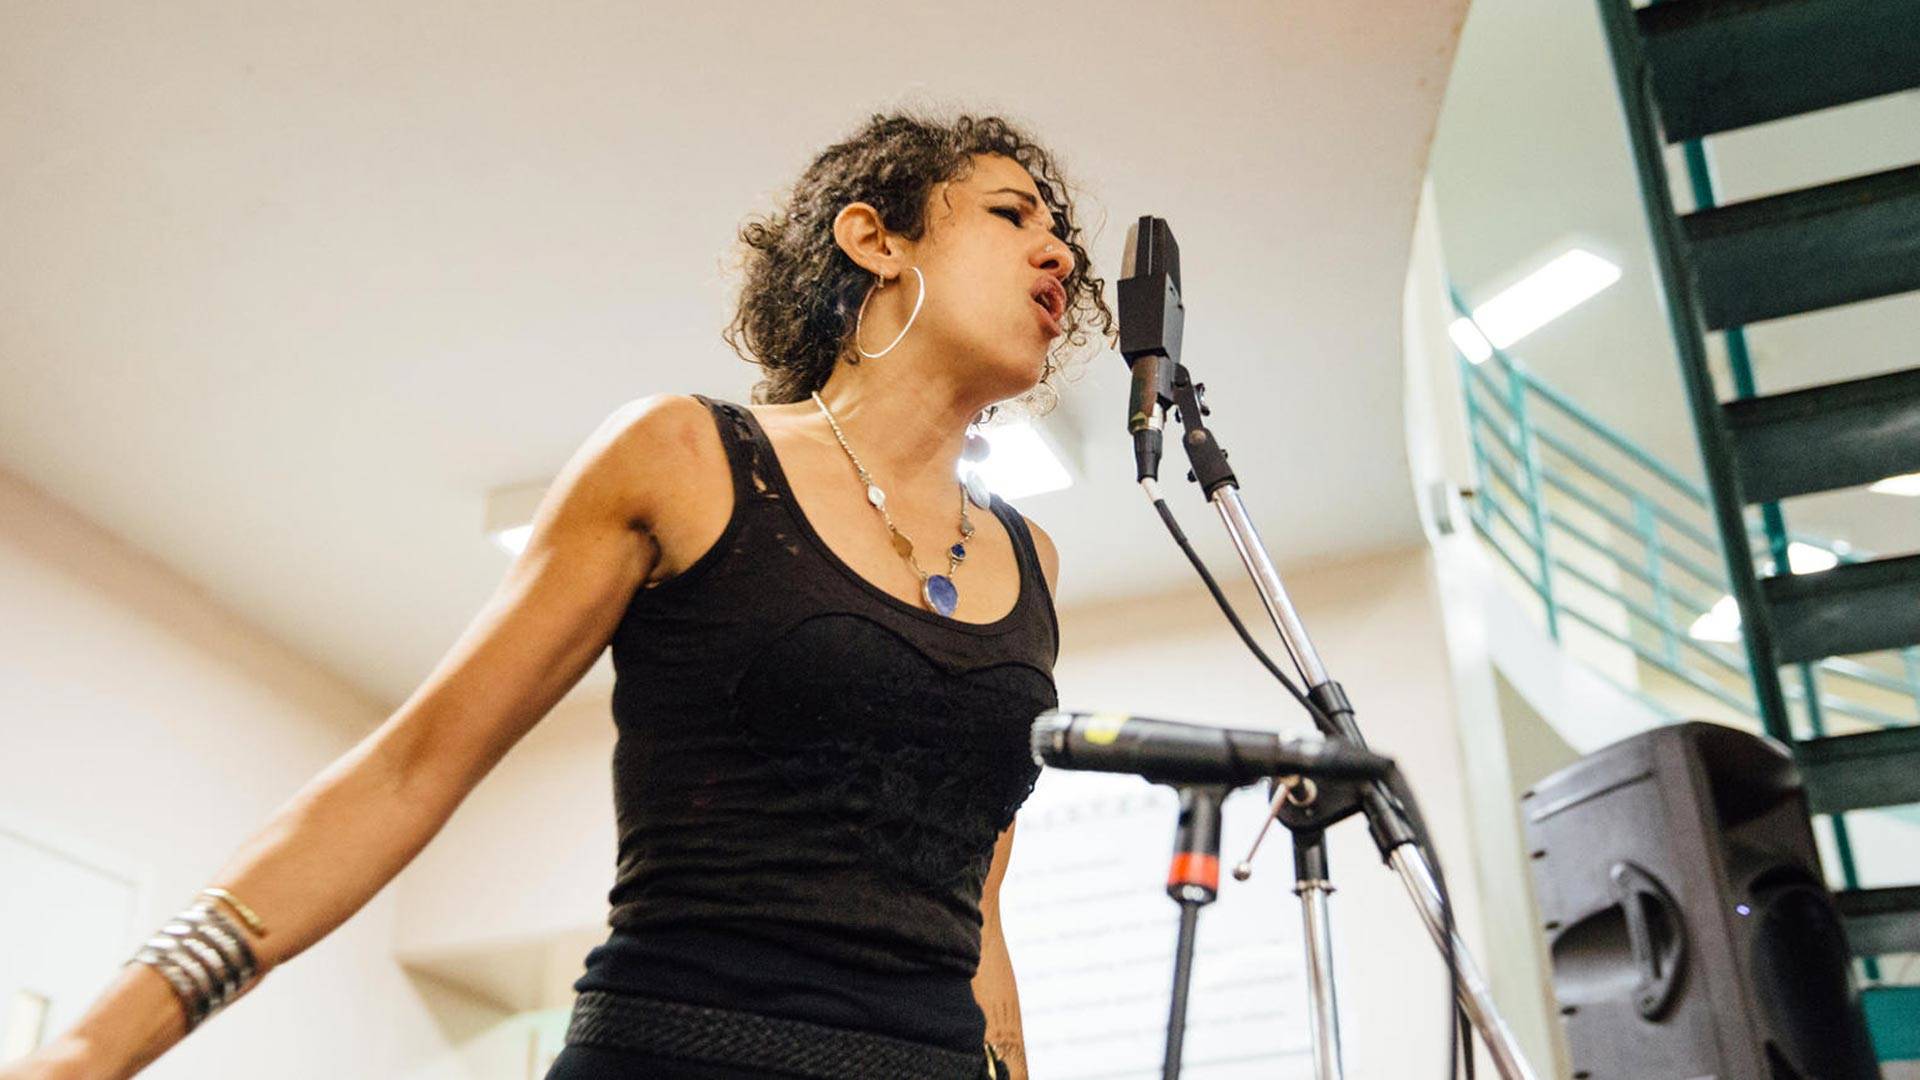 Naima Shalhoub performs for inmates at the San Francisco County Jail in 2015. Sarah Deragon